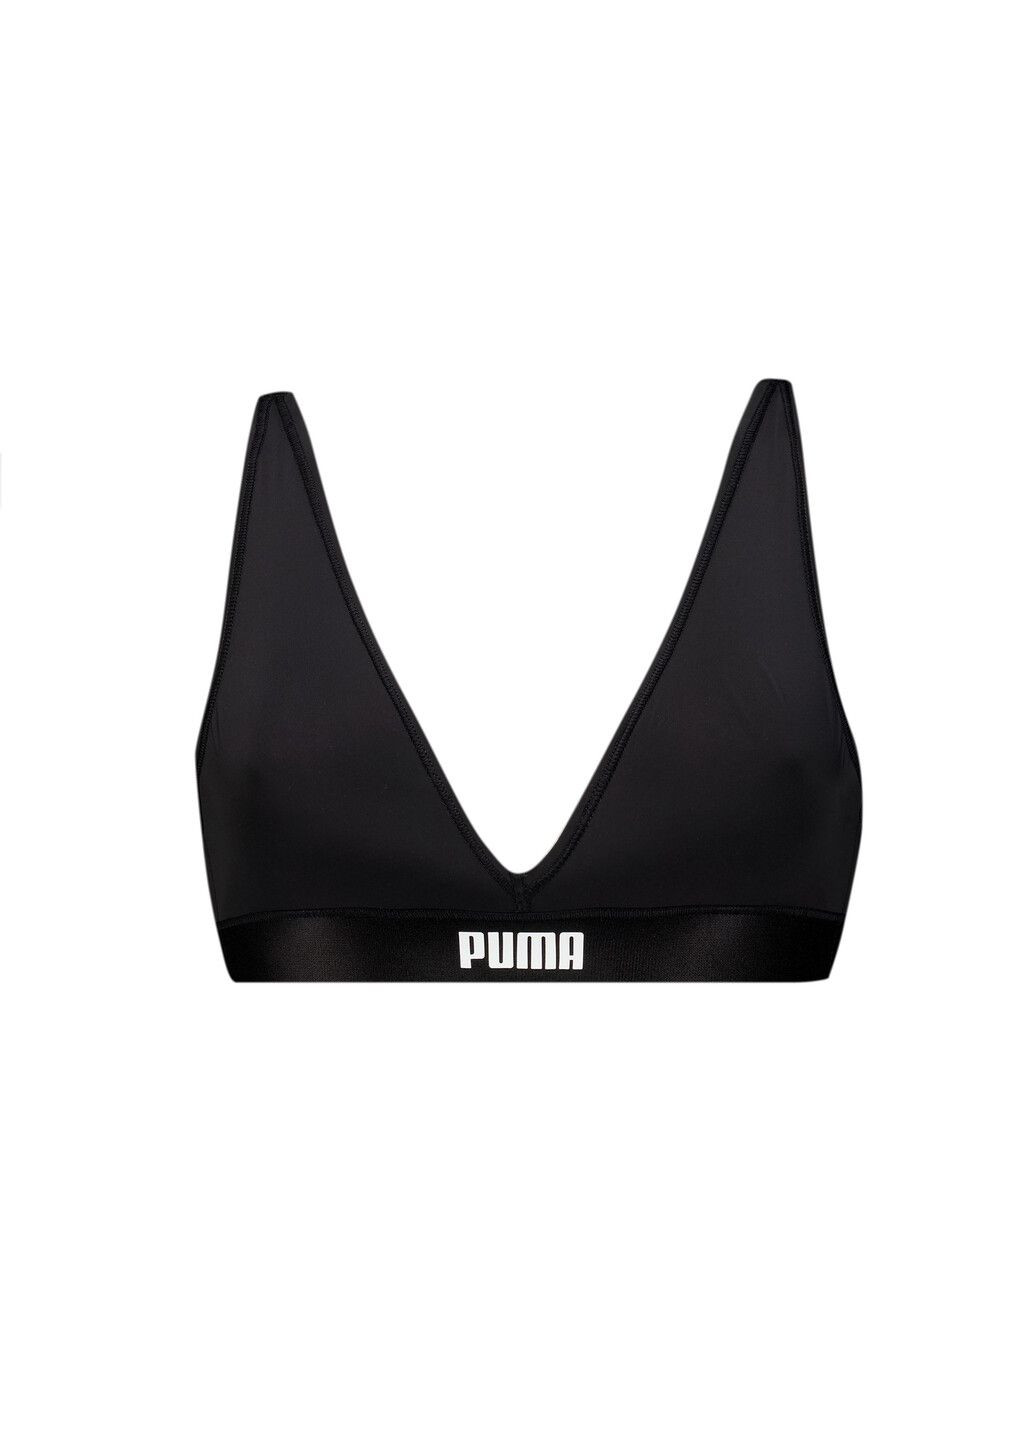 Чёрный топ women's short top Puma